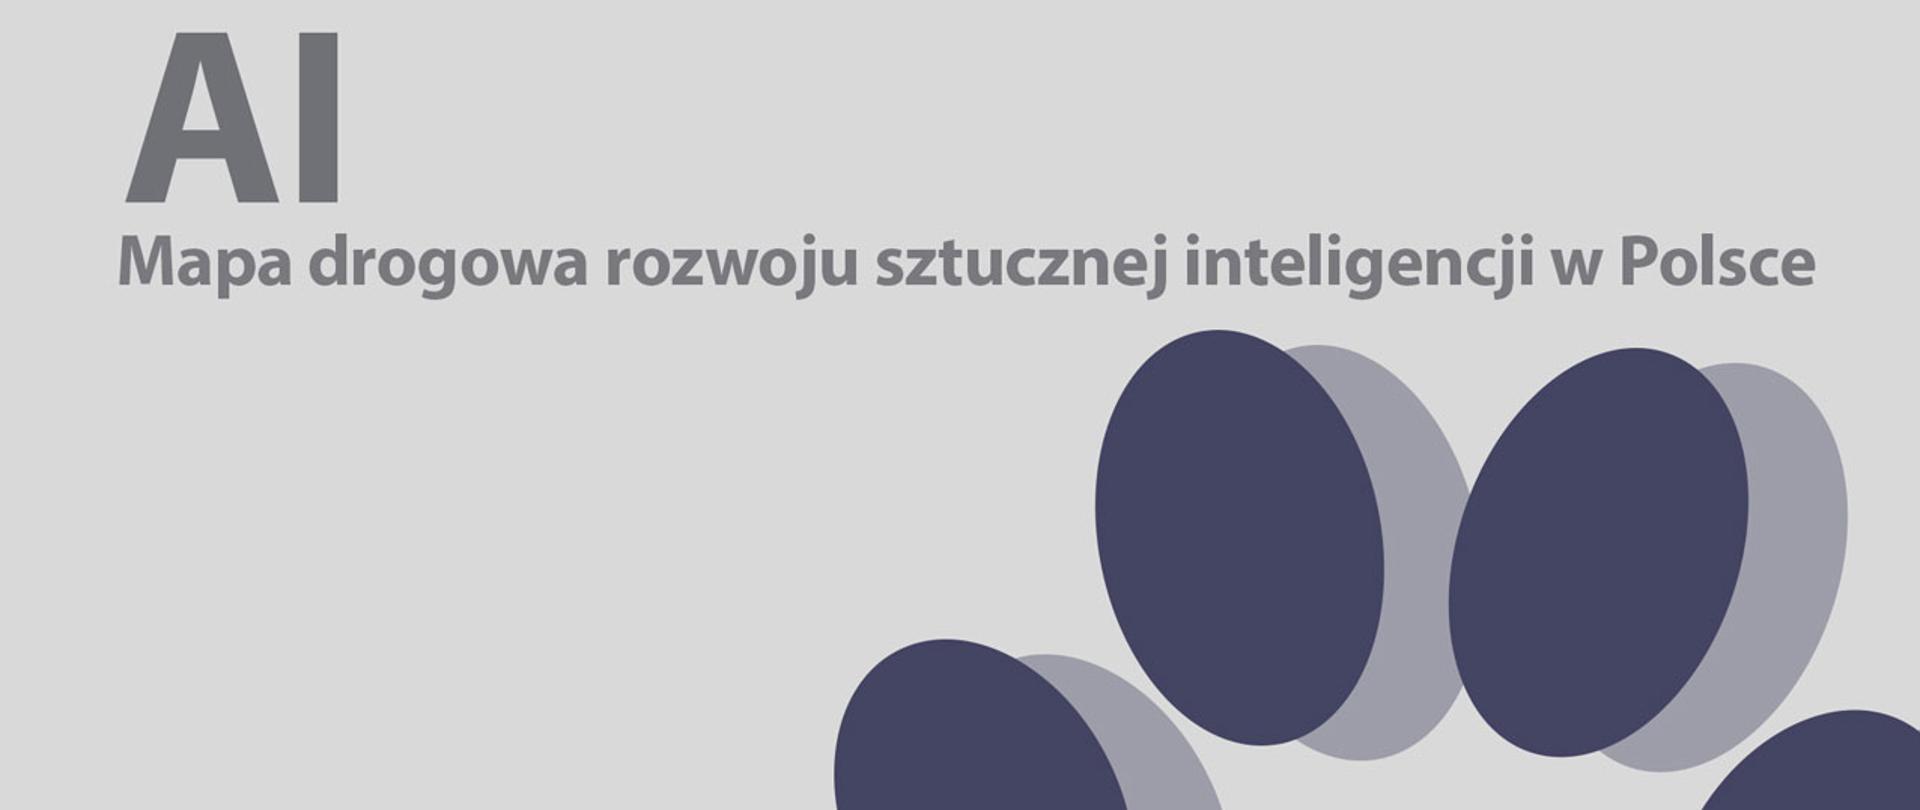 Rozwój sztucznej inteligencji w Polsce